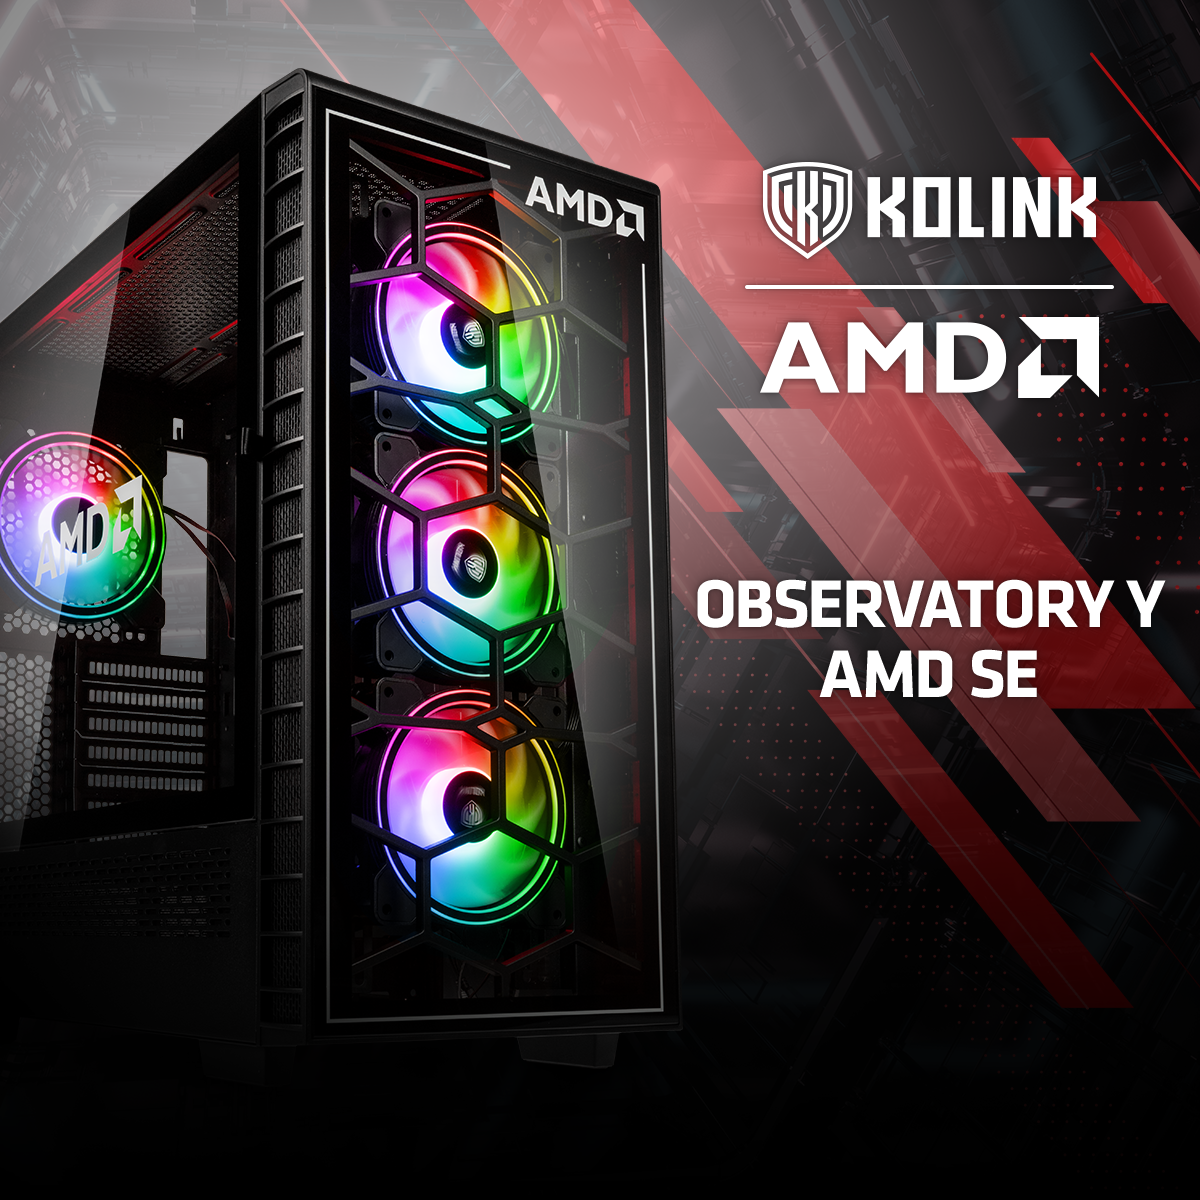 Kolink Observatory Y AMD SE